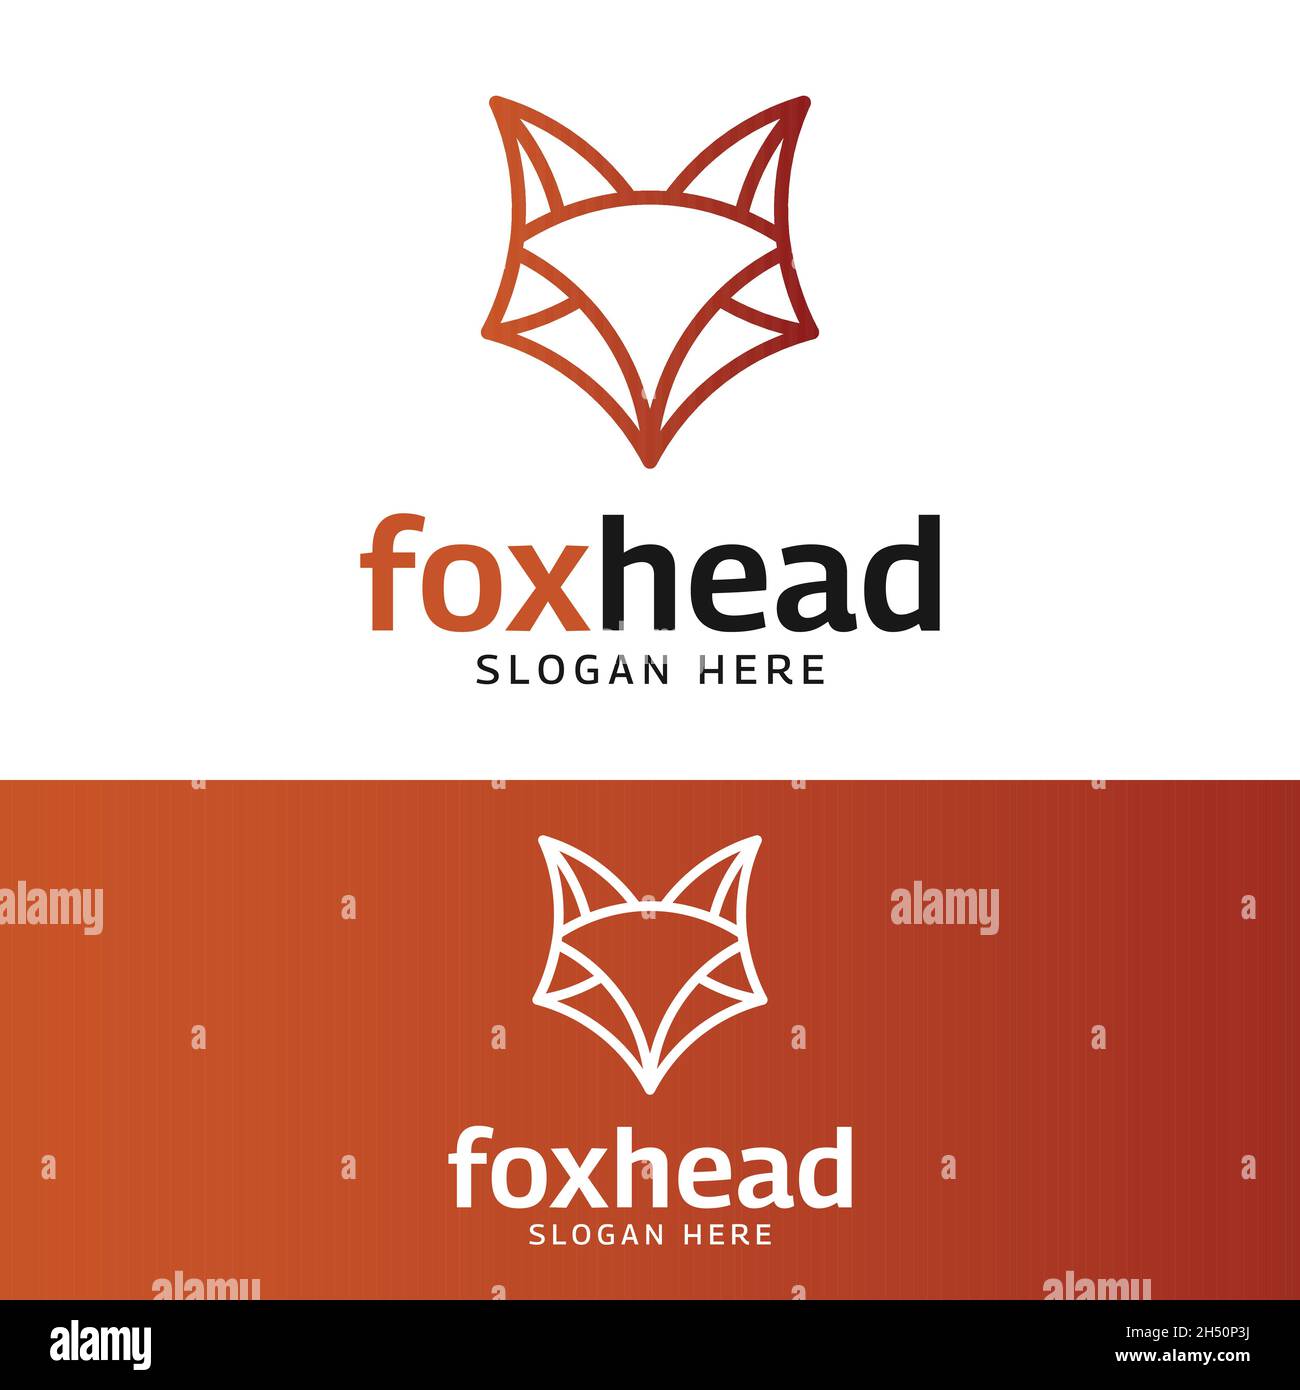 Modello di design con logo Simple Fox Head in stile Orange Line. Adatto per l'uso come mascotte per applicazioni digitali, marchi o logo aziendali. Illustrazione Vettoriale